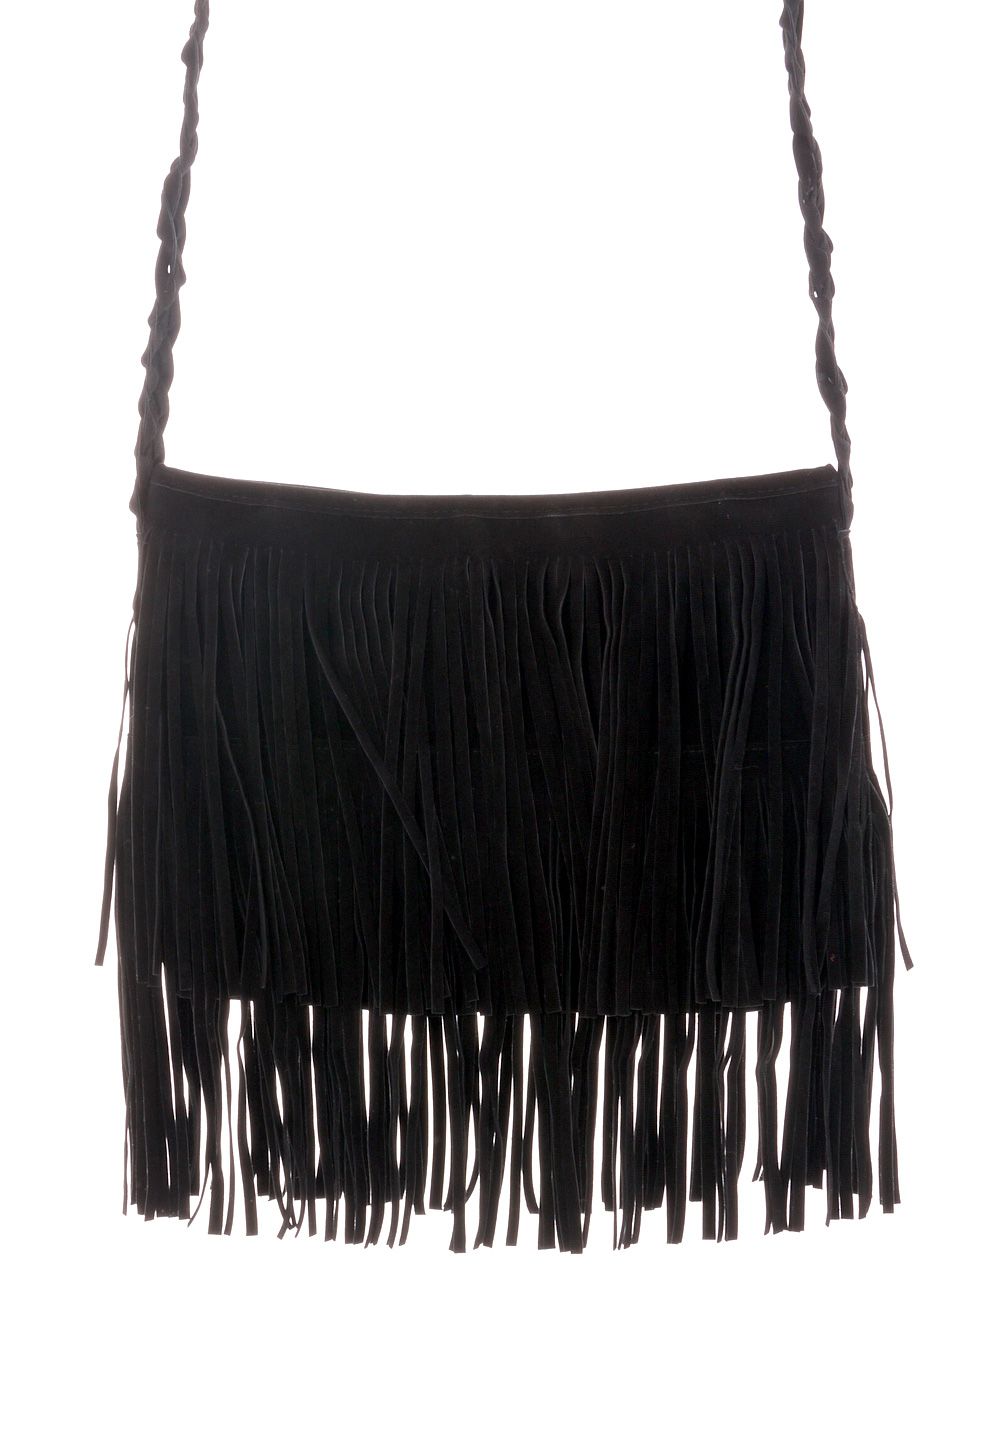 Black Fringe Knit Strap Shoulder Bag